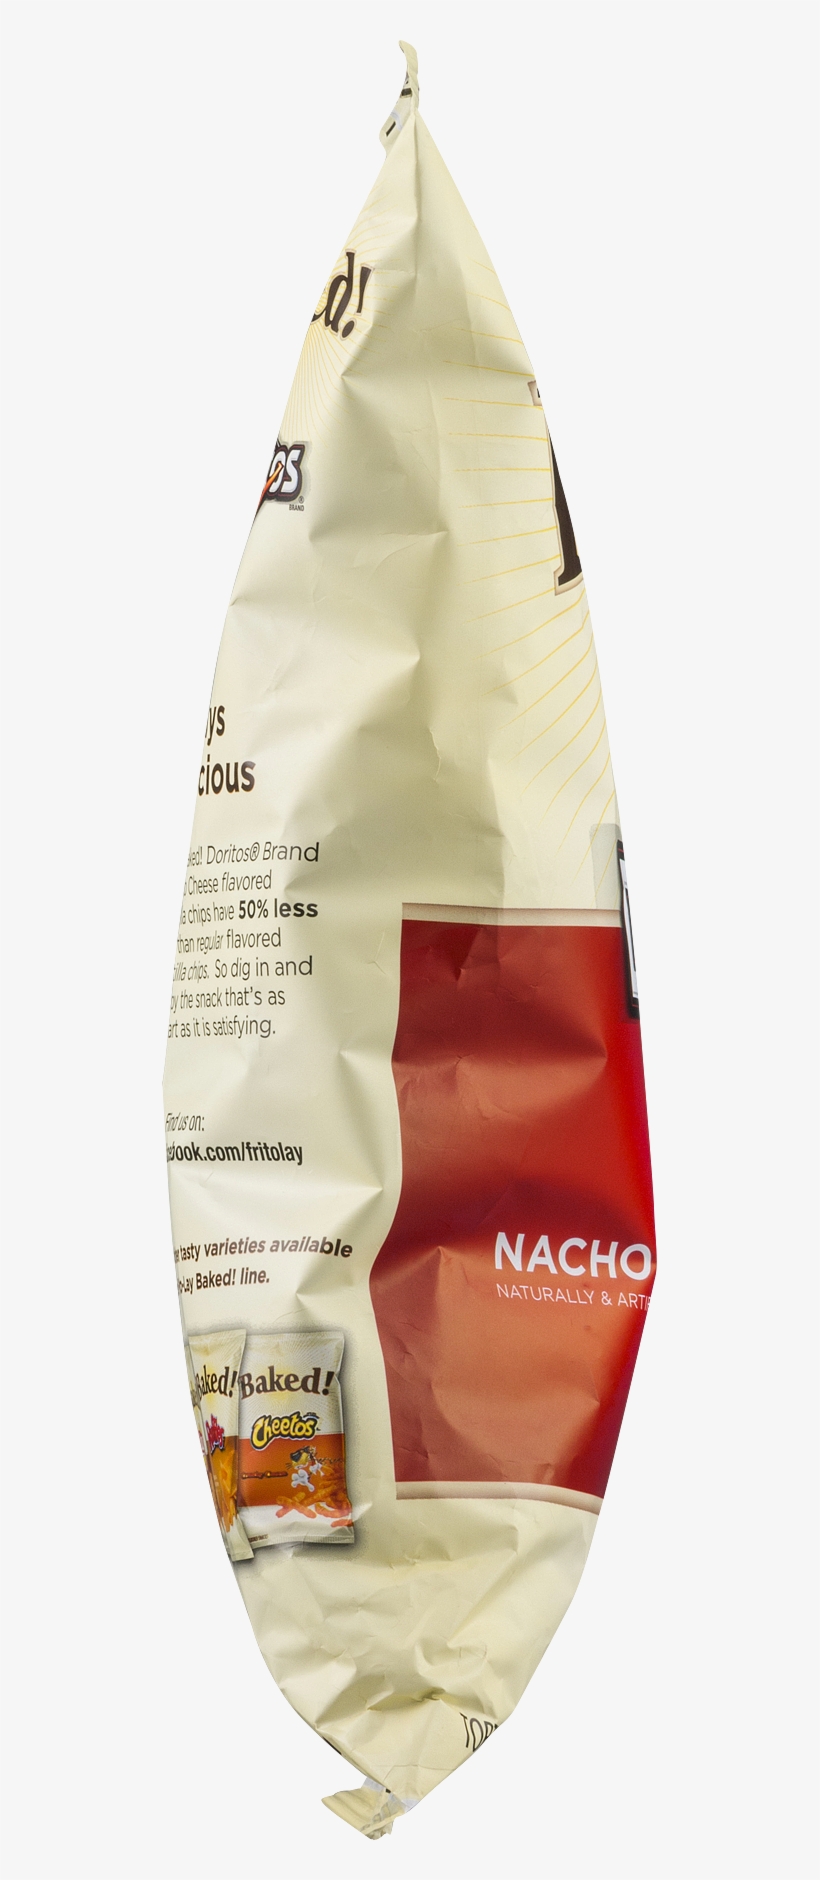 Doritos Nacho Cheese Tortilla Chips 8 Oz - Baked! Doritos Nacho Cheese Tortilla Chips - 8 Oz Bag, transparent png #5649250